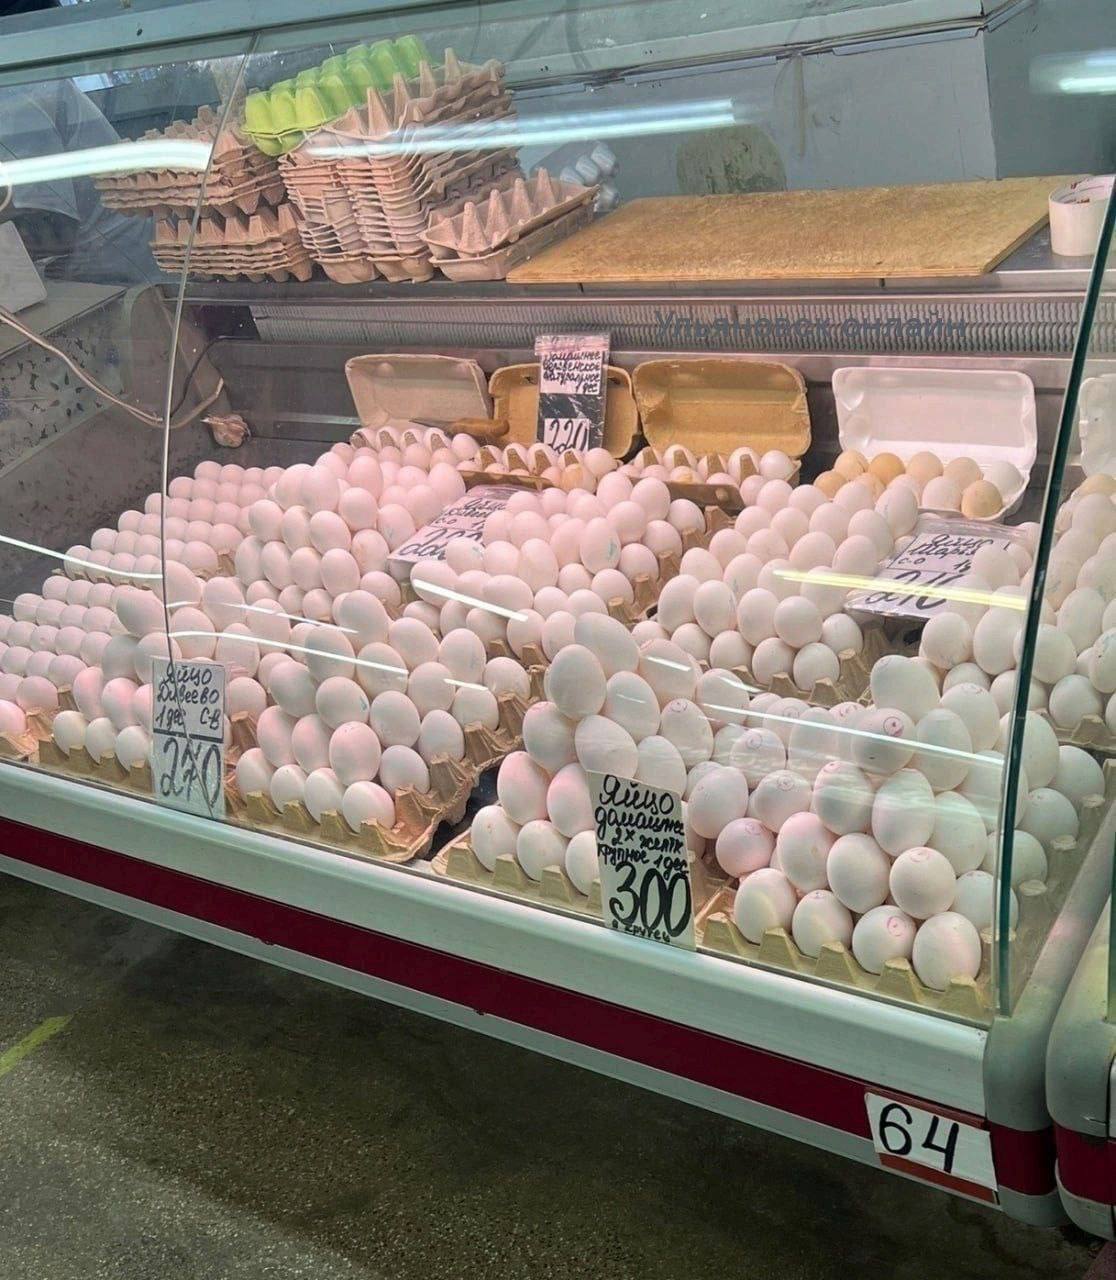 Scarce eggs are sold for 300 rubles per dozen